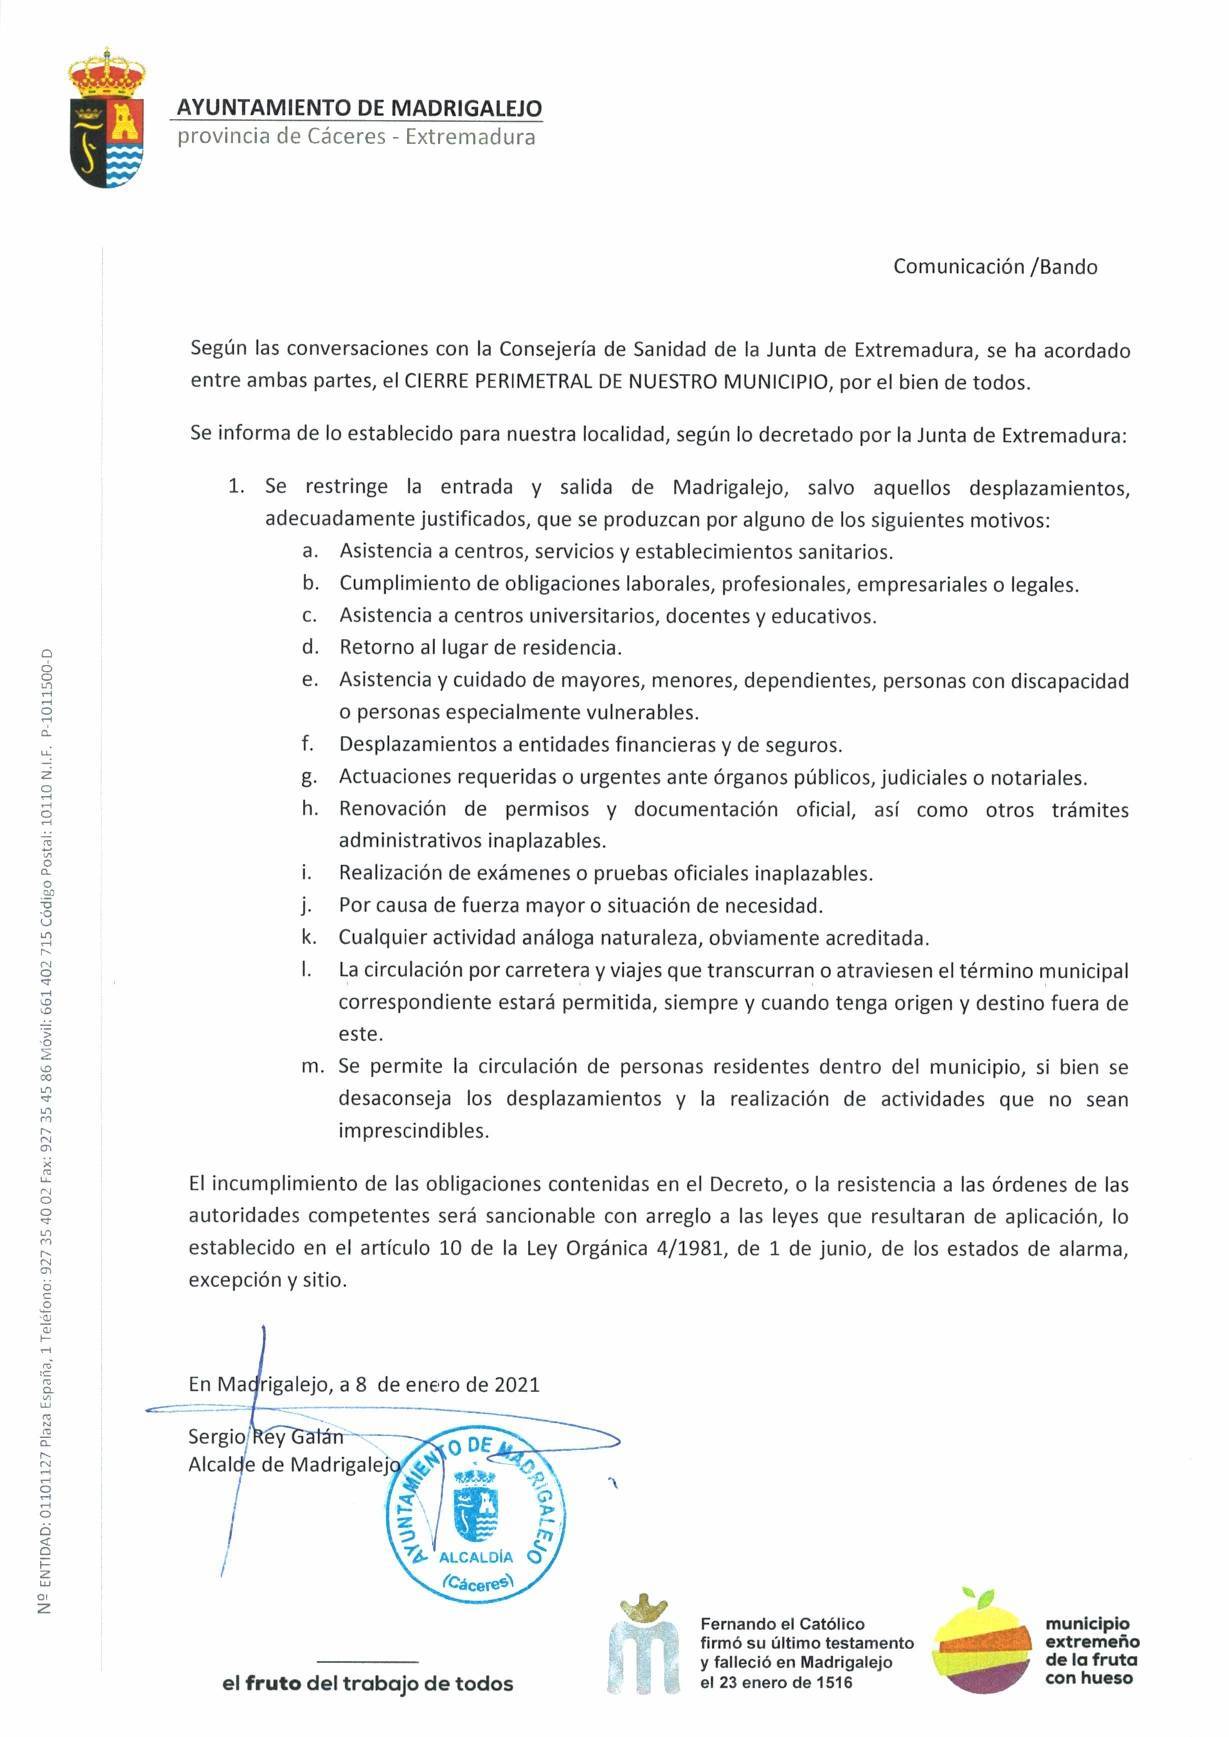 57 casos positivos y cierre perimetral por COVID-19 (enero 2021) - Madrigalejo (Cáceres) 2